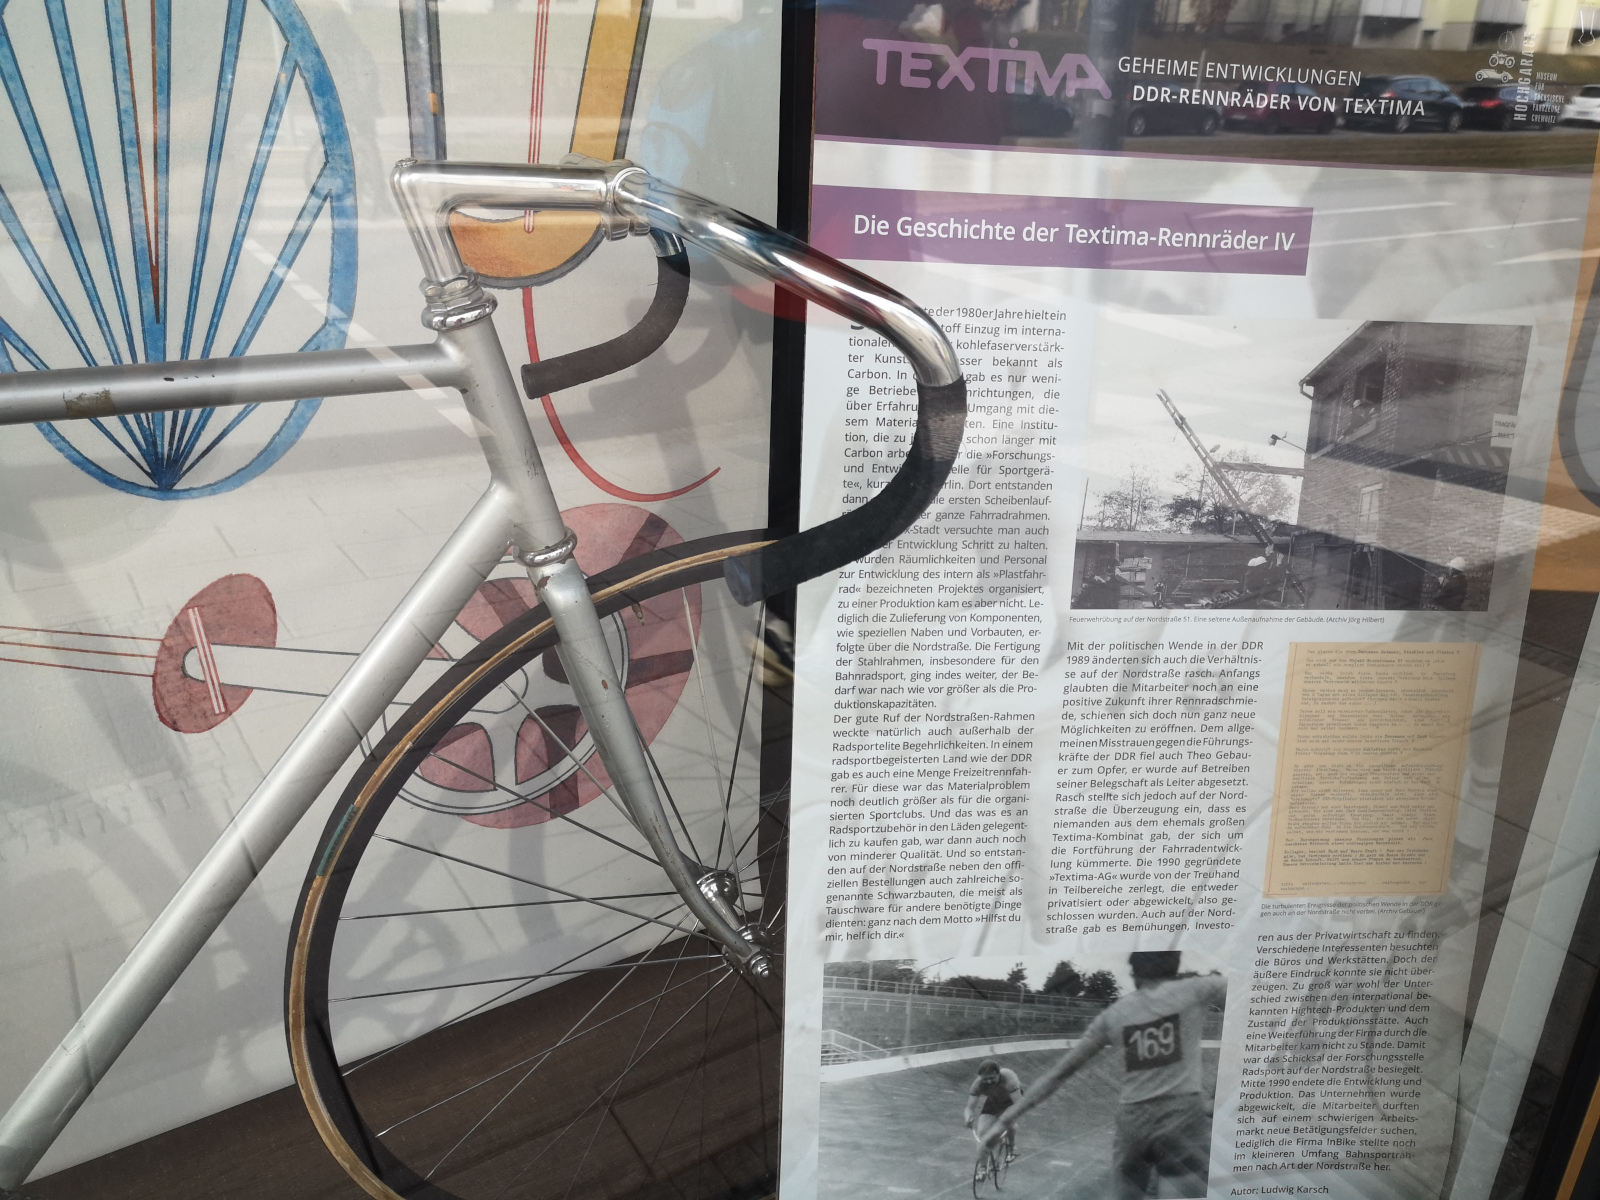 Schaufenster des Fahrradladens "Radschlag" in Chemnitz mit Textima-Ausstellung